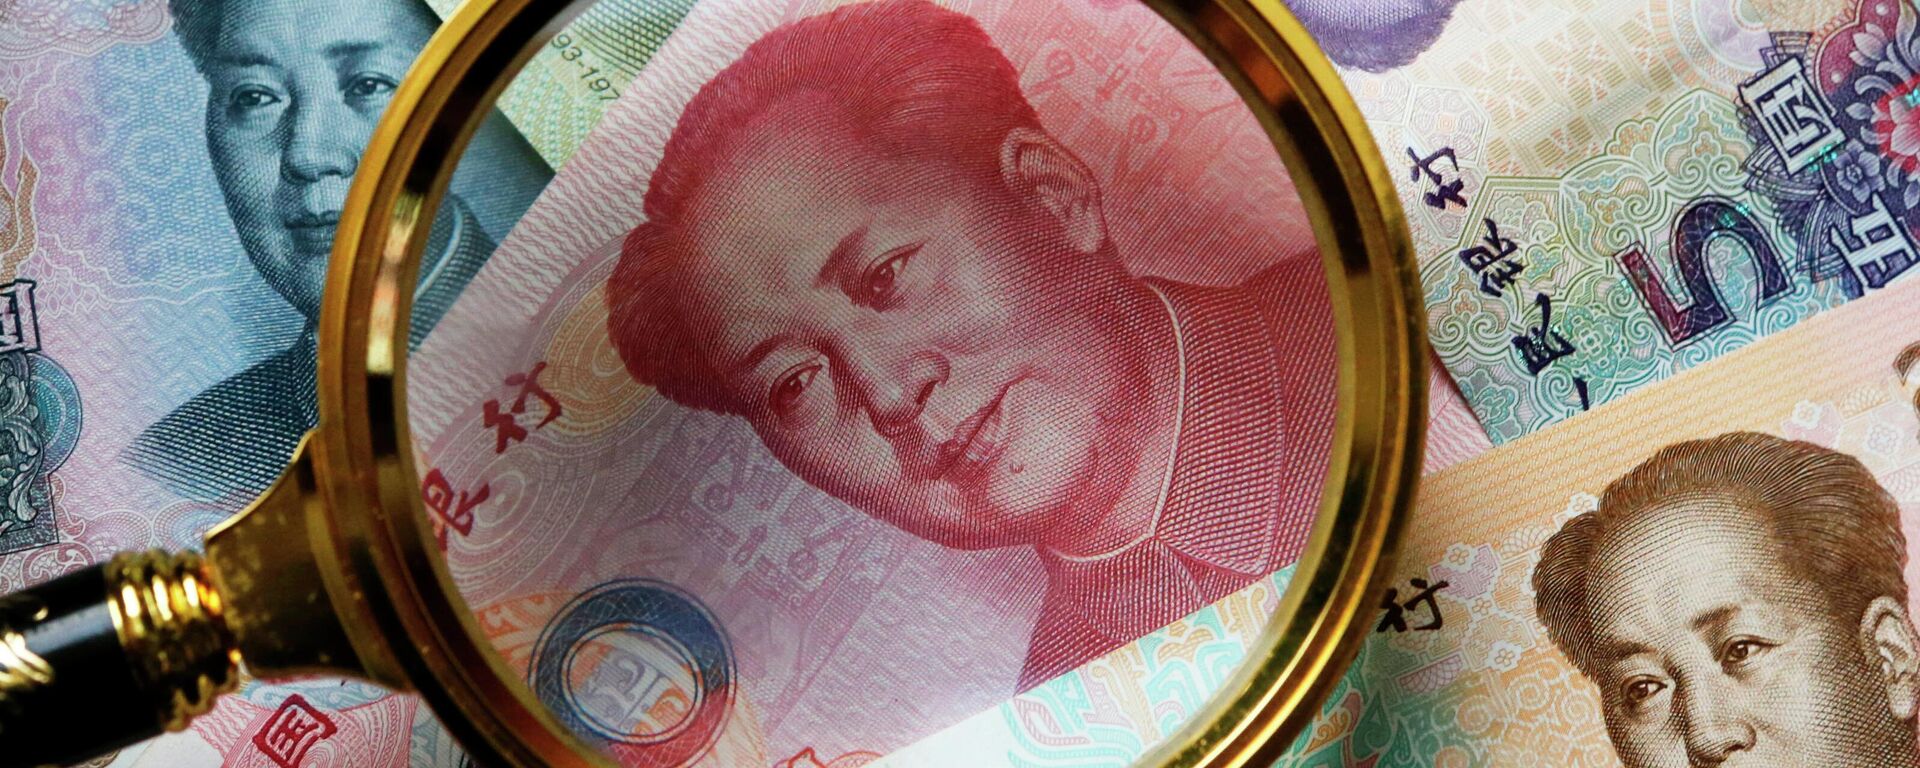 Китайские банкноты номиналом в 100, 50, 20,10 и 5 юаней. - Sputnik Абхазия, 1920, 02.01.2022